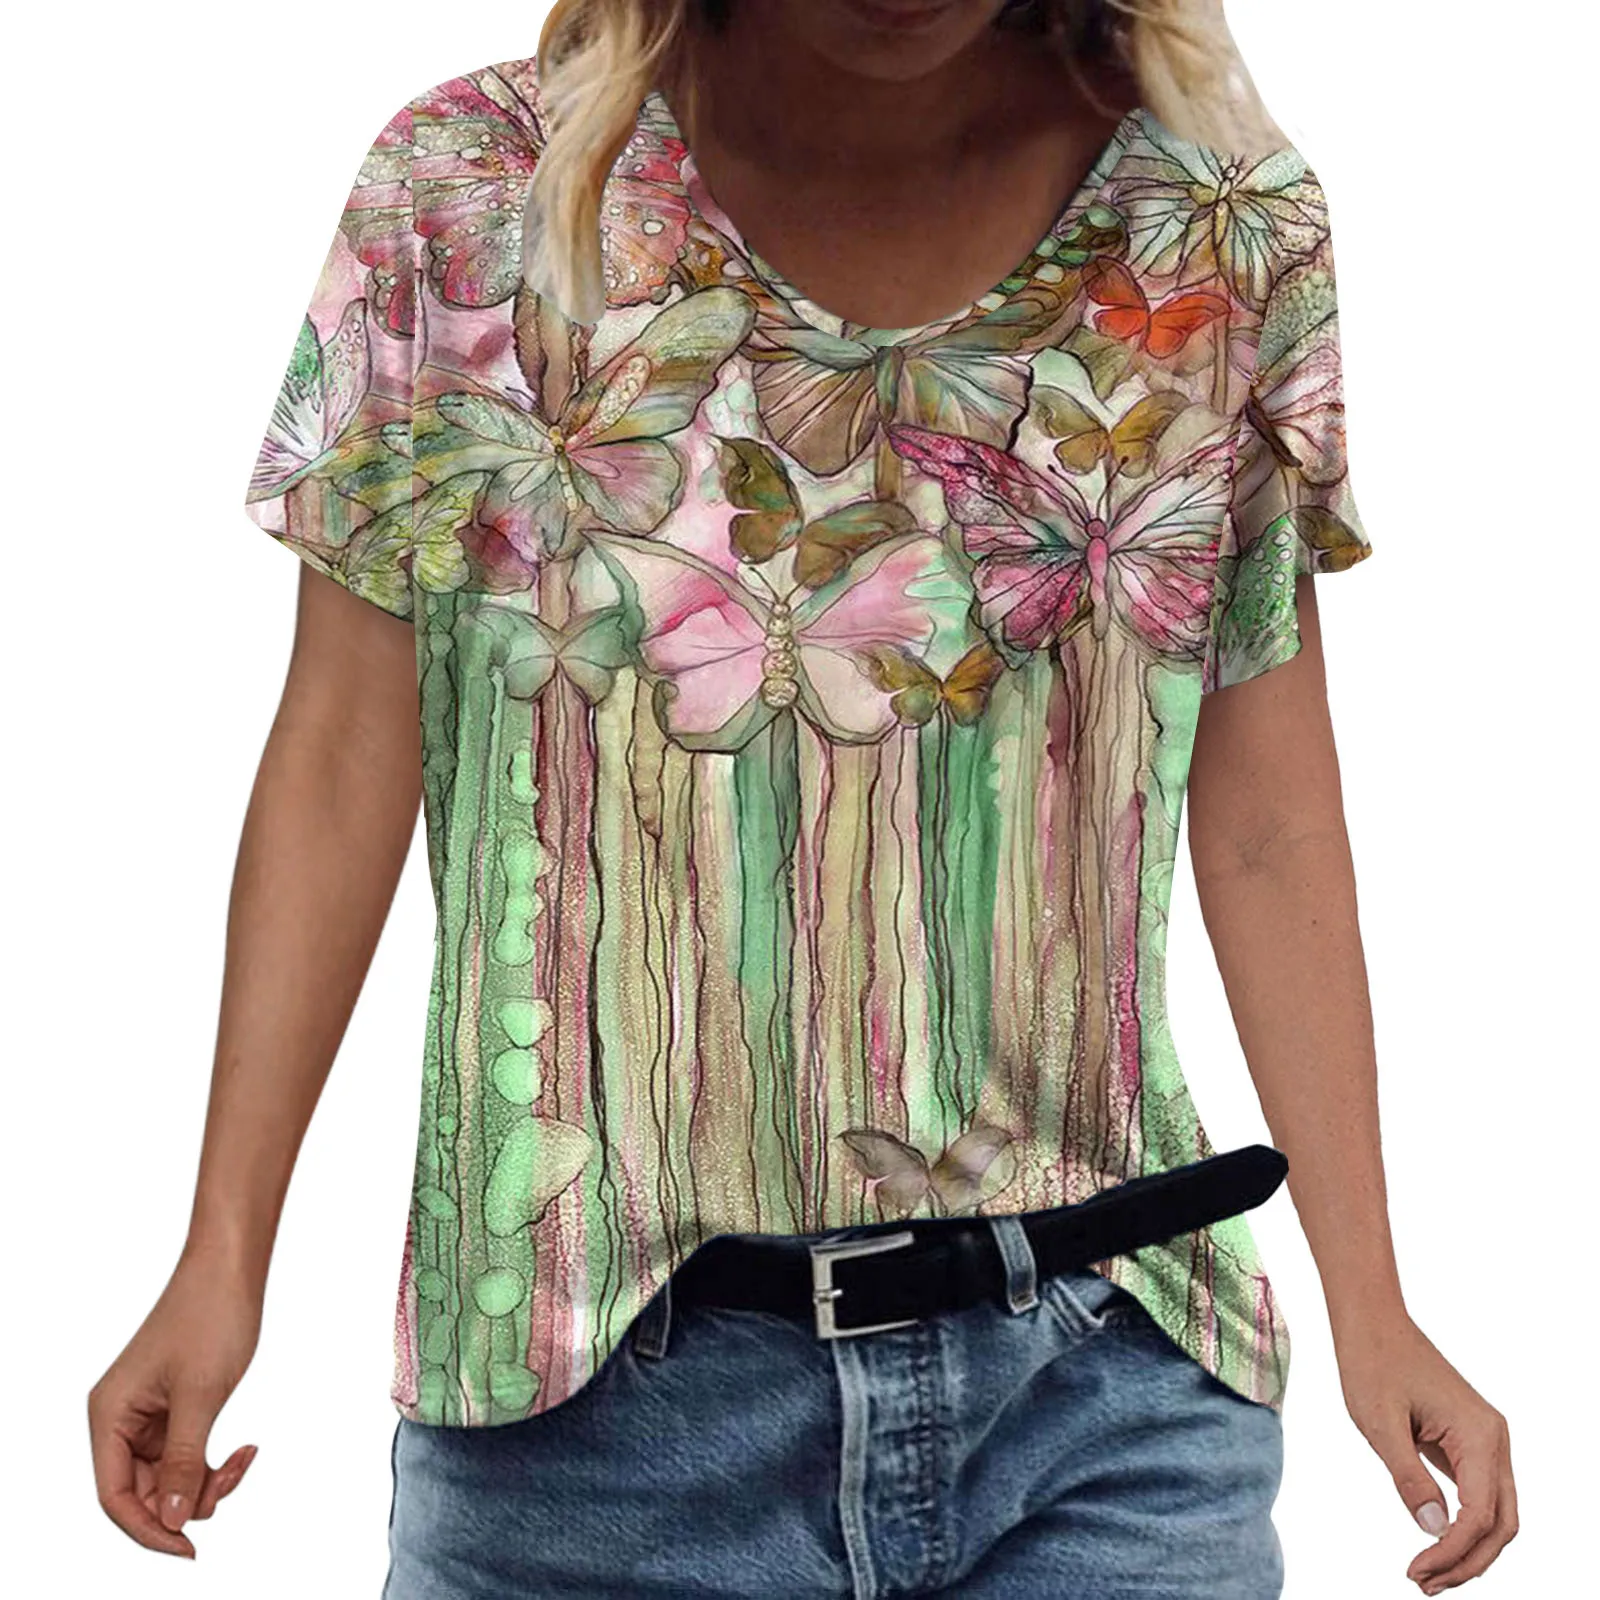 Moda das Mulheres de Verão T-shirt Impresso Manga Curta O Pescoço Camisa Casual Tee Tops Ropa Mujer Verano 2022 Vetement Femme Imagem 3